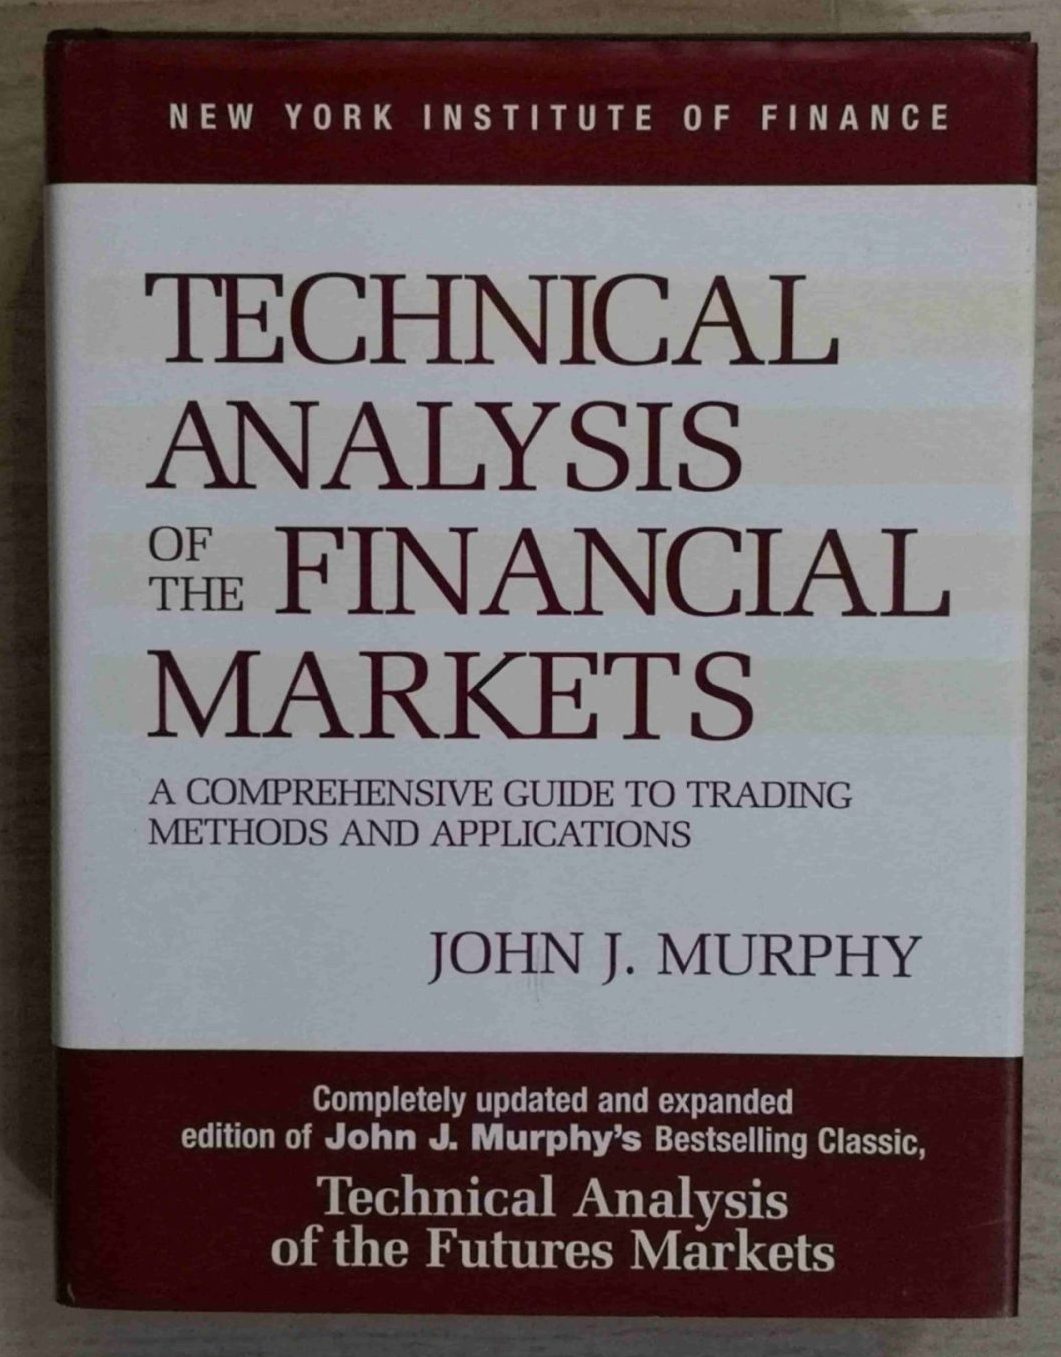 تحلیل تکنیکال در بازار سرمایه نوشته جان مورفی